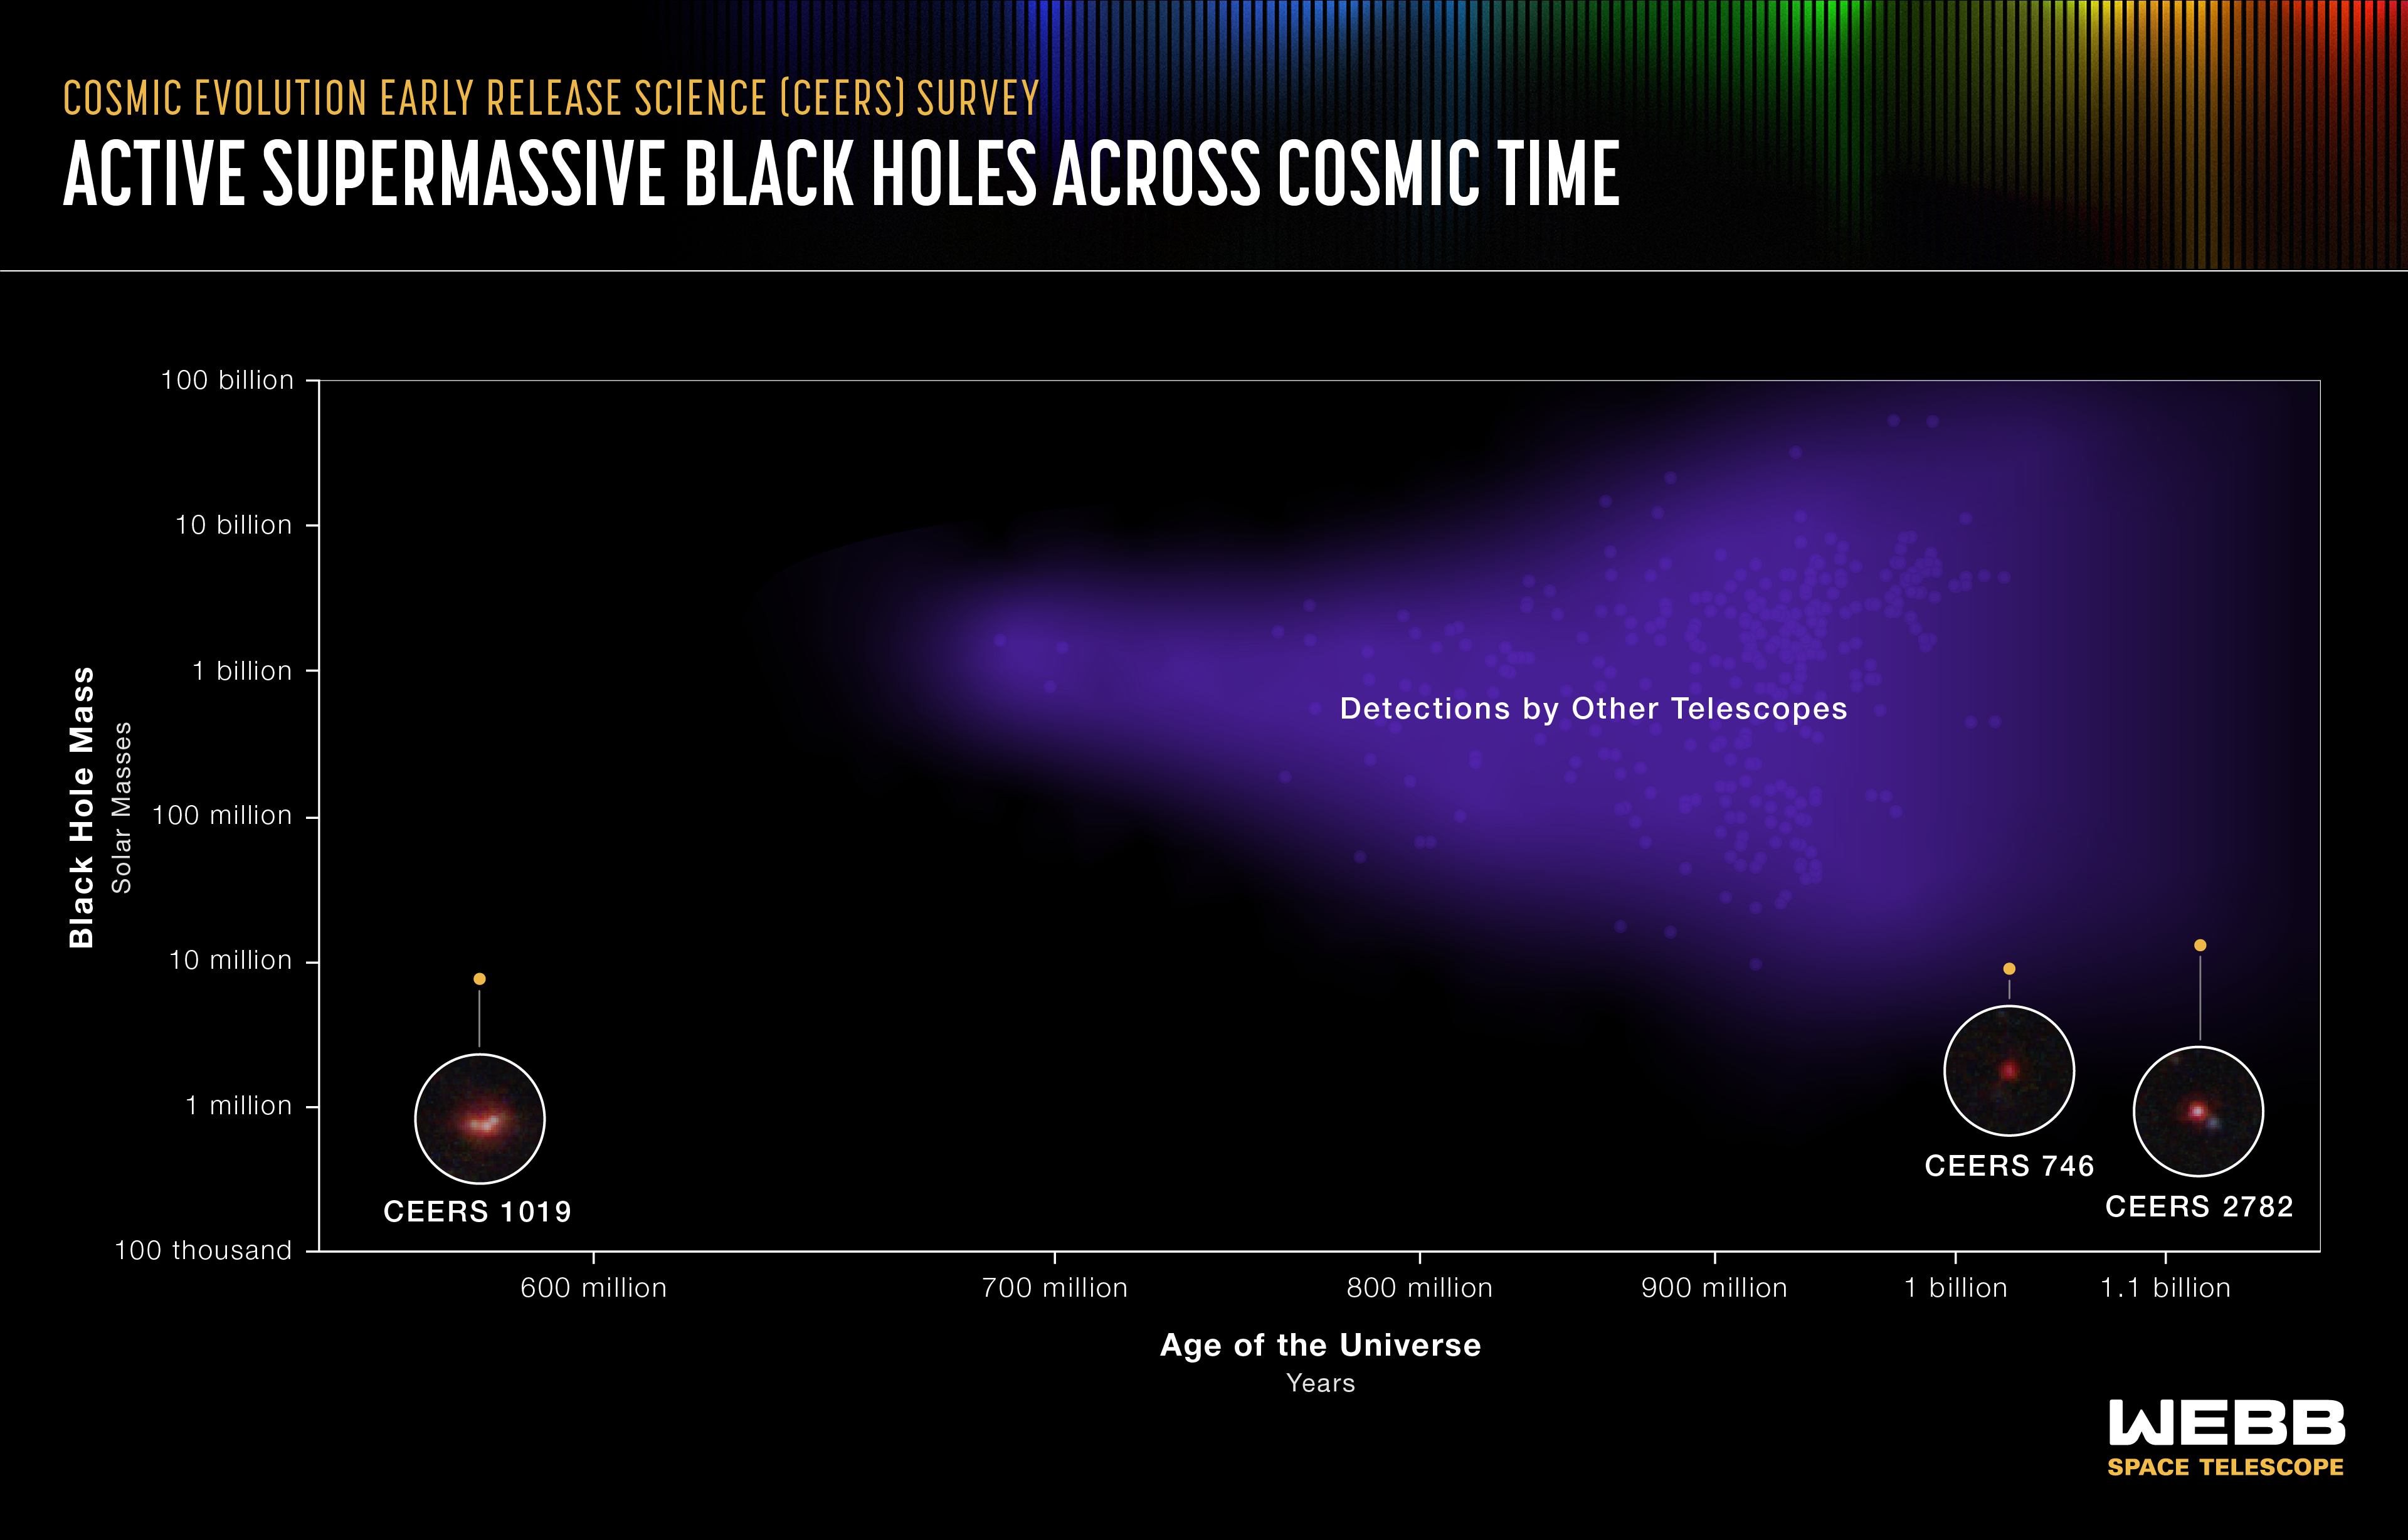 Grafika pokazuje podstawowe informacje (wiek Wszechświata vs masy czarnych dziur w milionach mas Słońca) najbardziej odległych według aktualnego stanu wiedzy aktywnych supermasywnych czarnych dziur we Wszechświecie. Niebieskie tło reprezentuje czarne dziury, które zostały odkryte przez różne teleskopy- zarówno orbitalne jak i naziemne. Trzy żółte kropki reprezentują aktywne supermasywne czarne dziury, które zostały odkryte niedawno w ramach przeglądu CEERS (Cosmic Evolution Early Release Science) z użyciem Teleskopu Webba. Ciekawe, że te czarne dziury odkryte przez Teleskop Webba są około kilkaset razy mniej masywne, niż odkryte innymi teleskopami (niebieskie tło). Źródło: NASA, ESA, CSA, Leah Hustak (STScI)